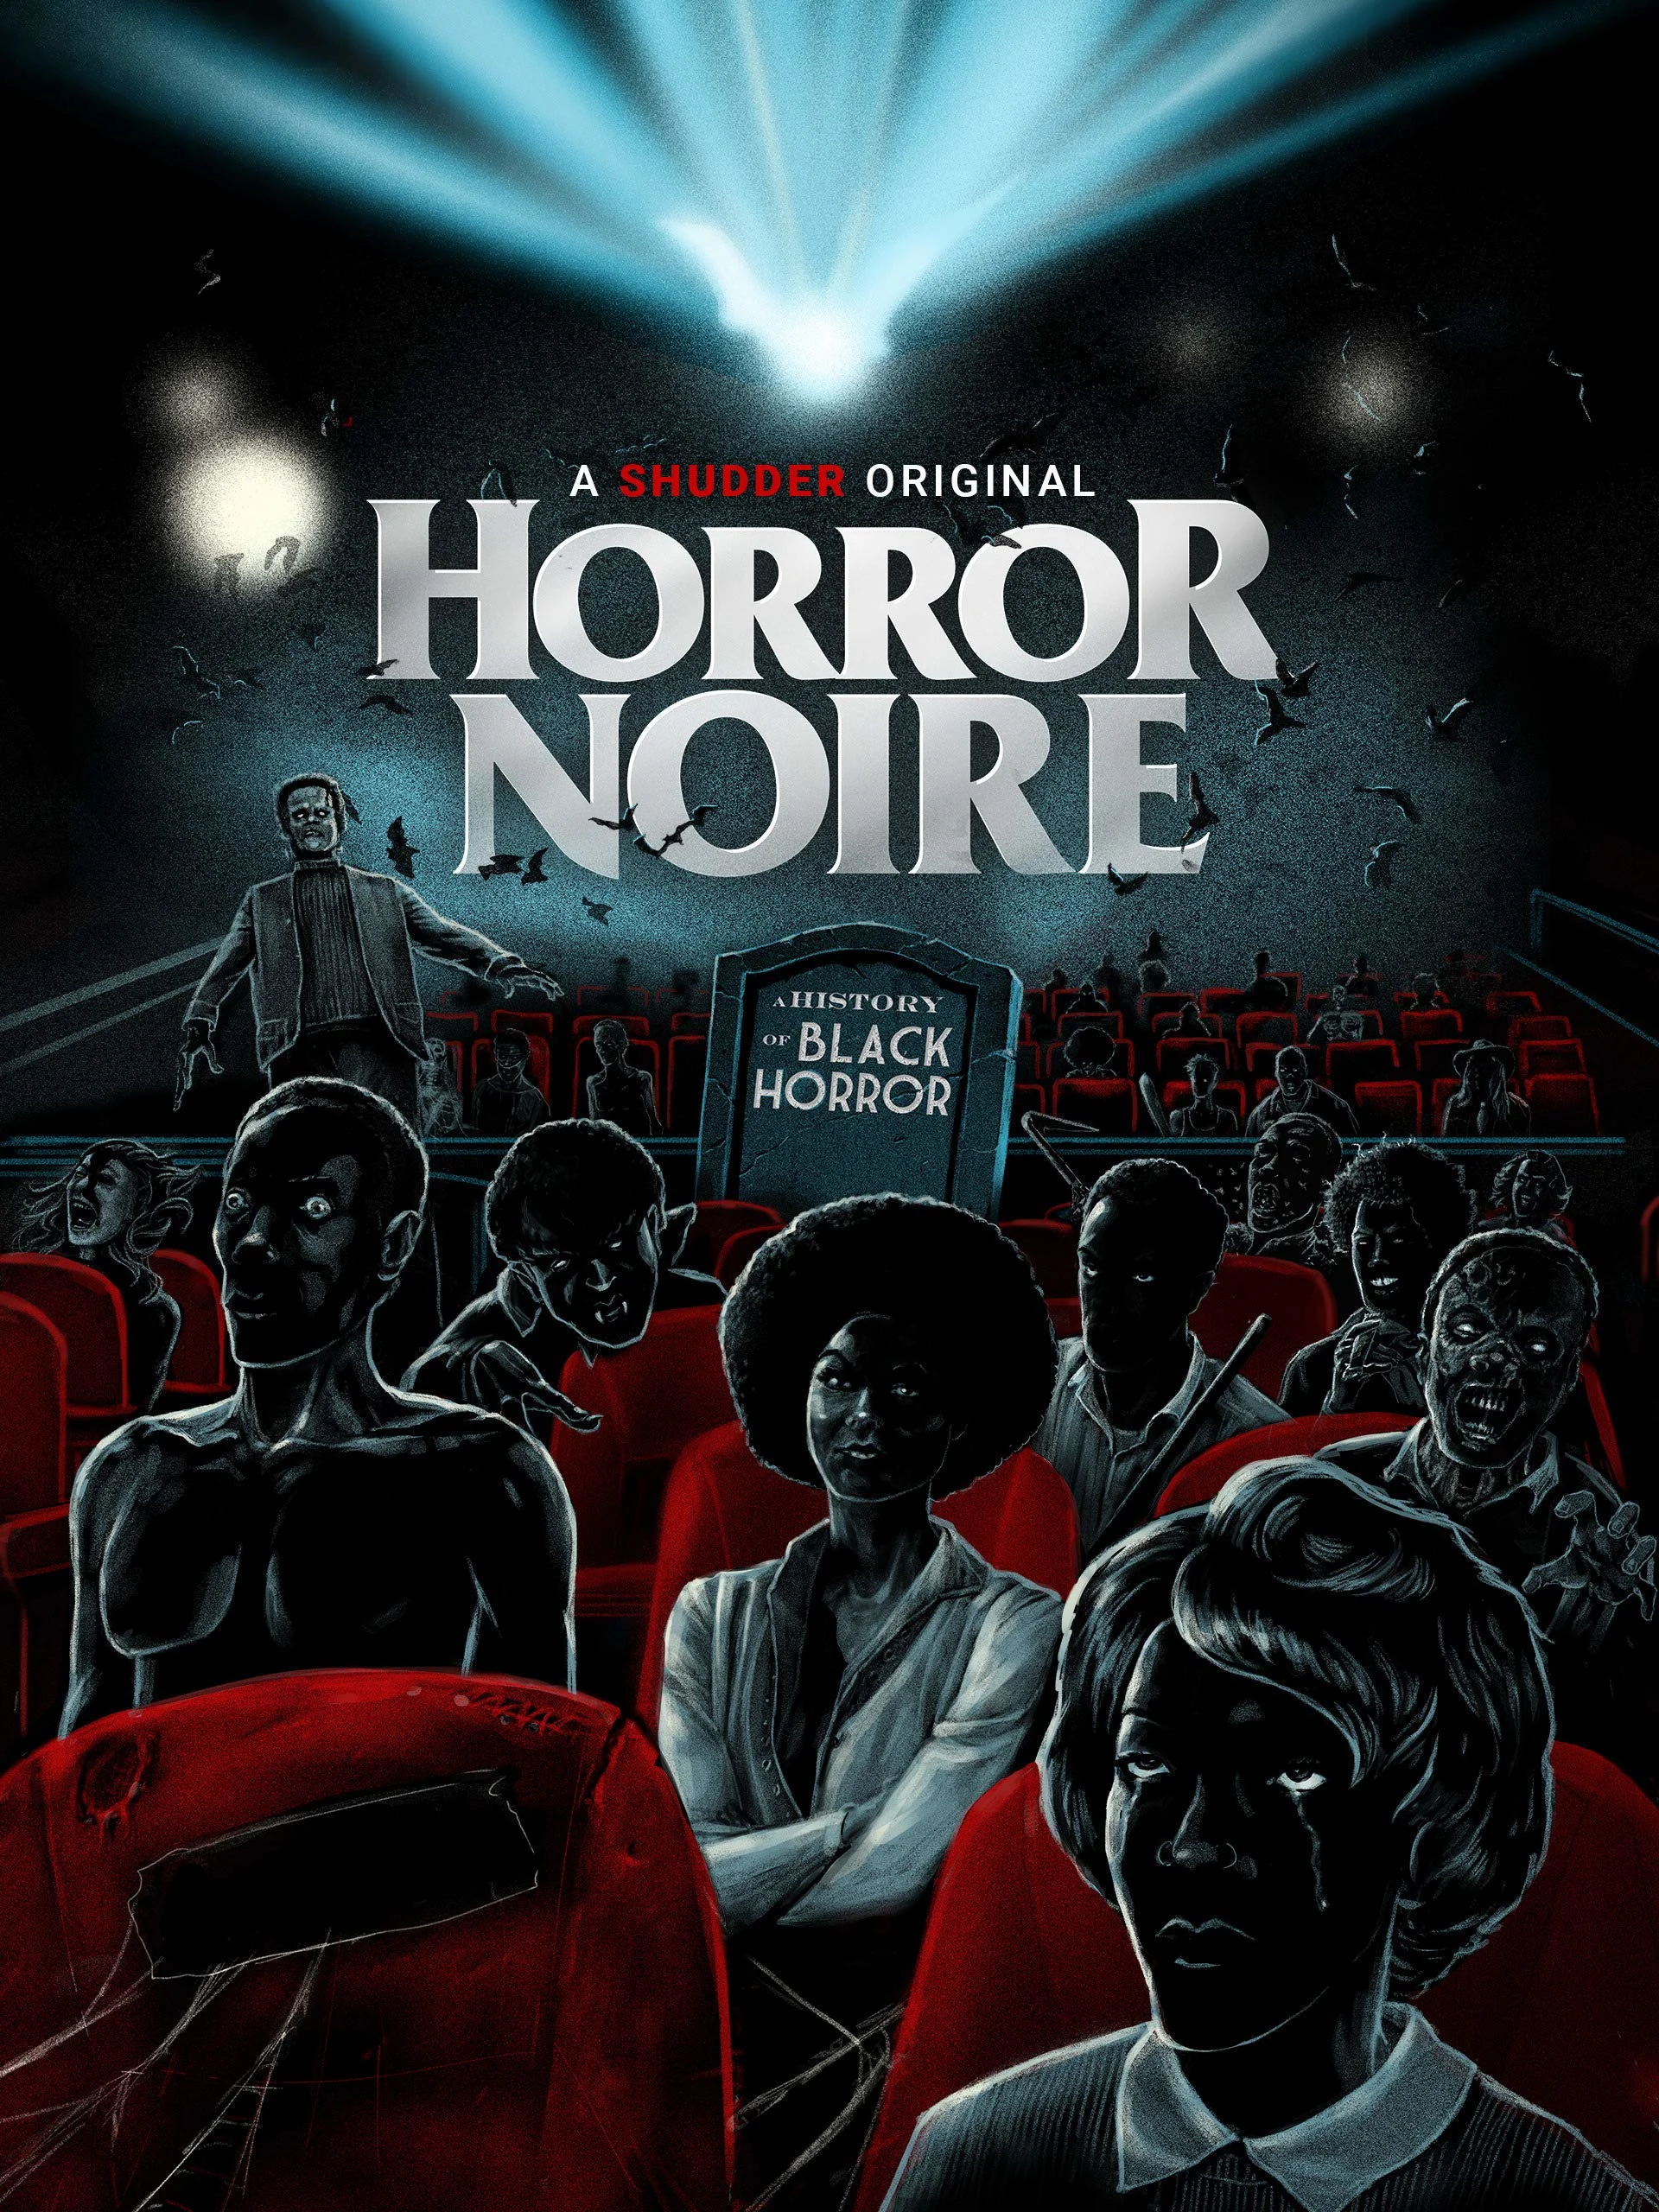 Horror Noire Anthology (Region Free) on MovieShack